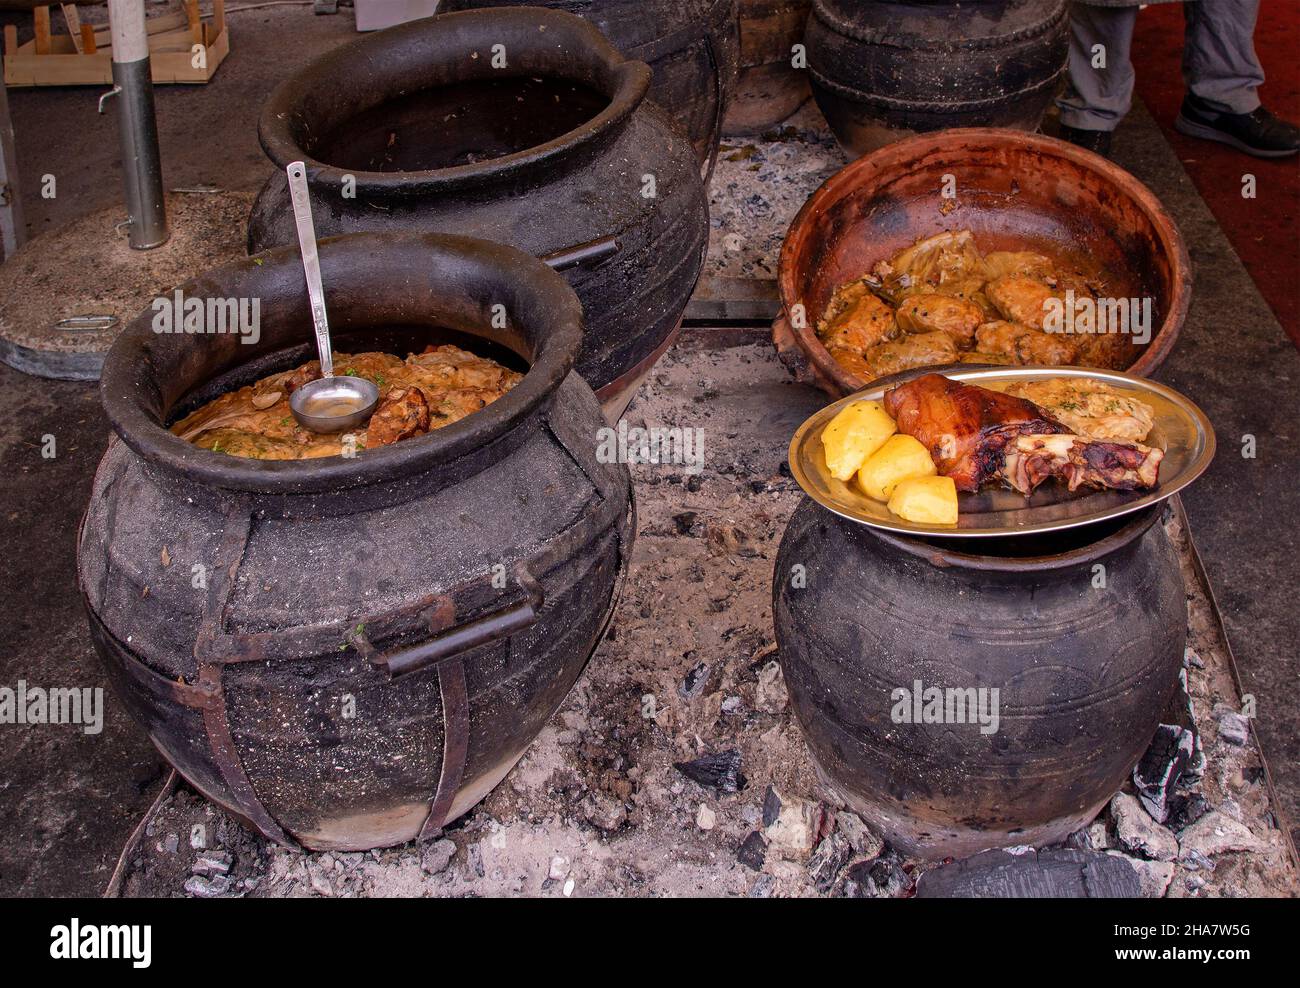 Cuisine traditionnelle régionale de la région des Balkans cuisinée dans des pots en faïence et servie chaude sur le marché local Banque D'Images